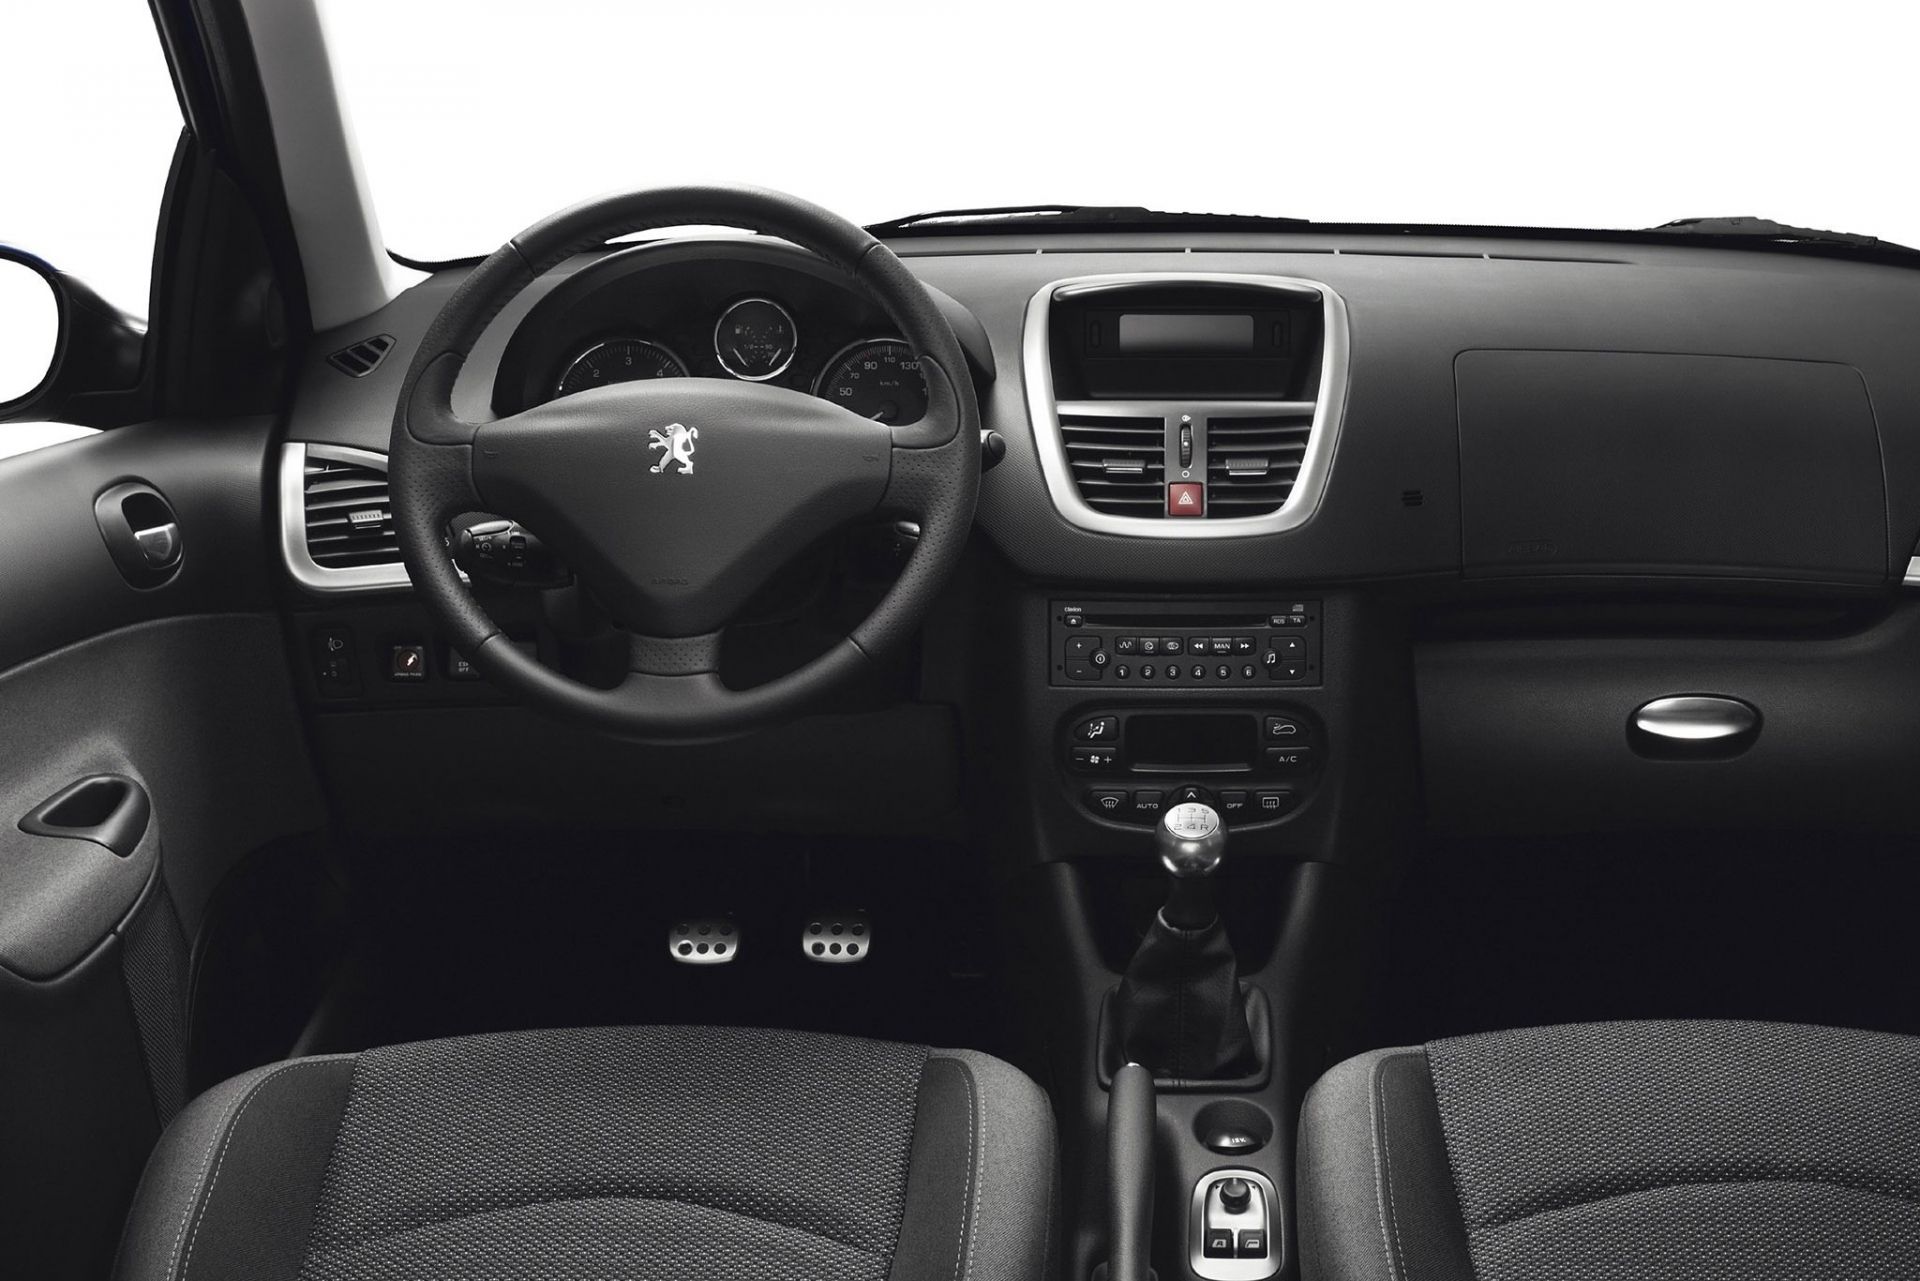 Какого максимального размера колонки можно установить в салон Peugeot 206 вместо штатных фото